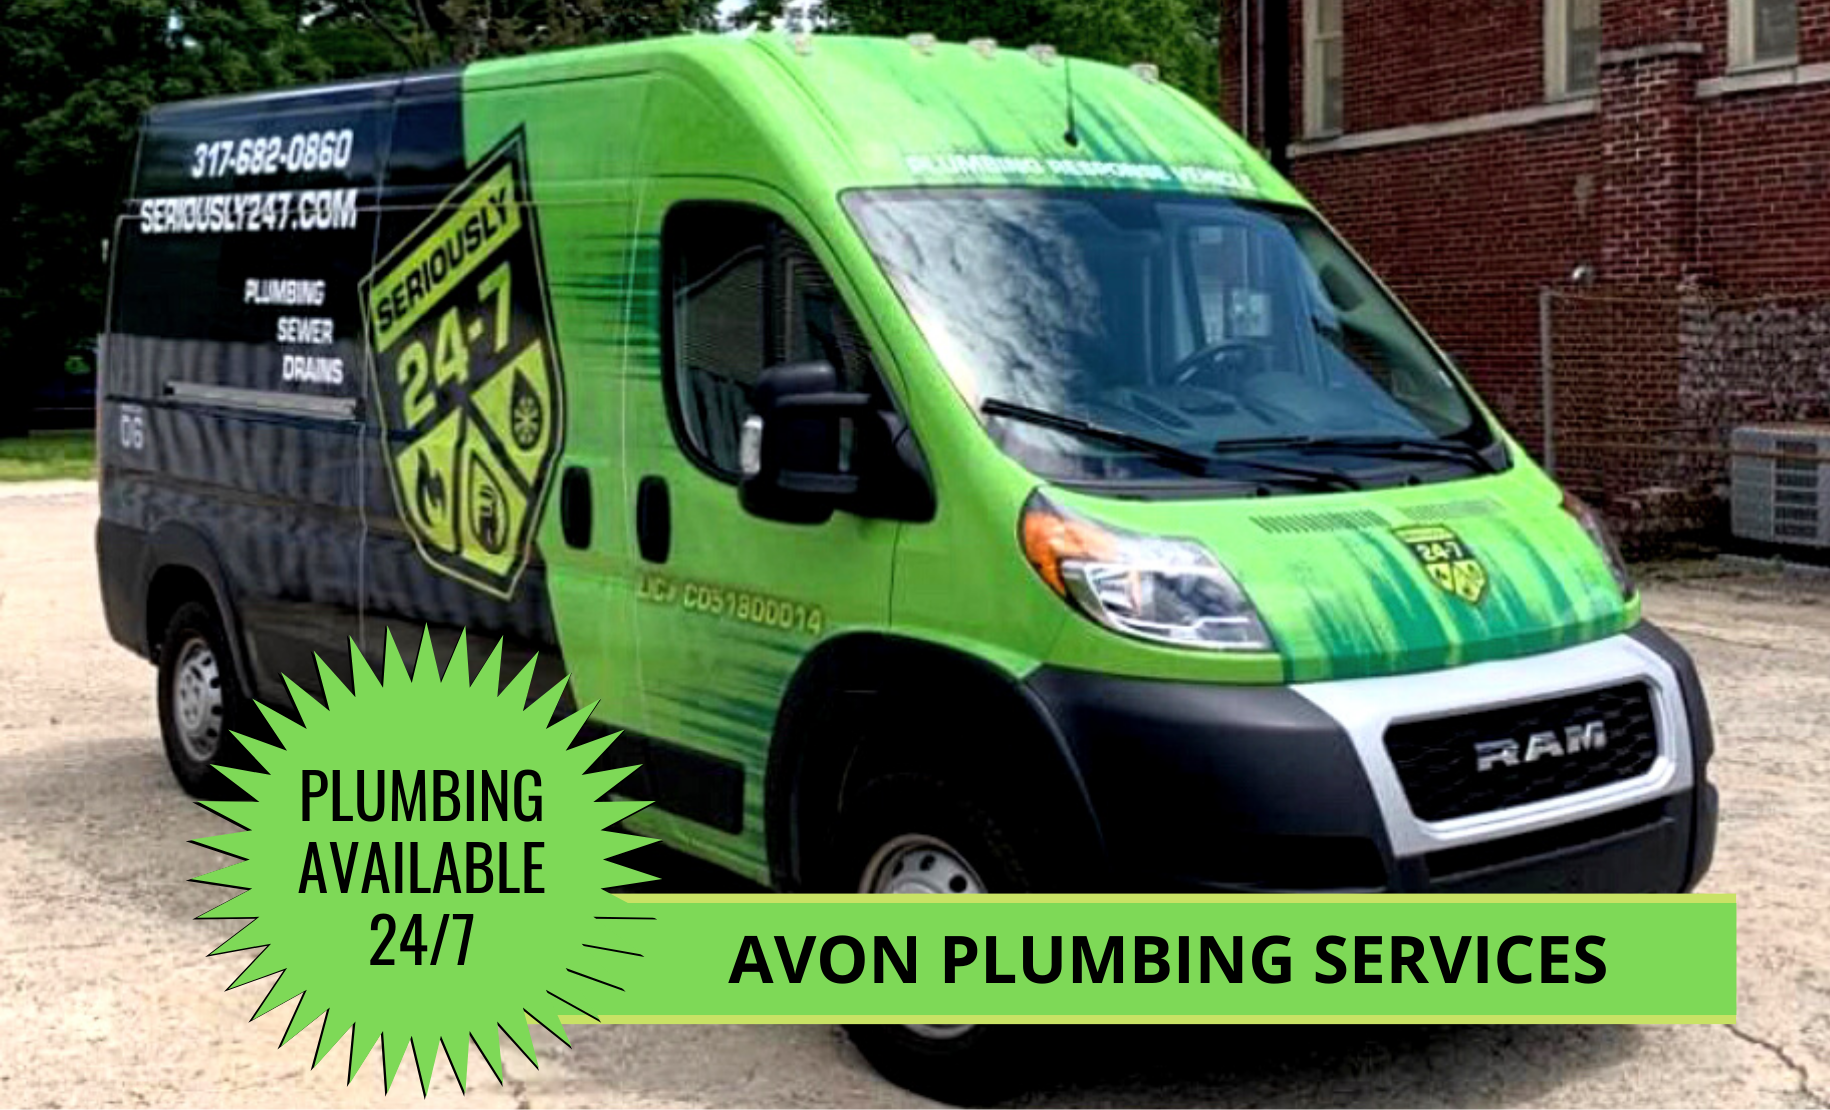 Avon Plumbing Services